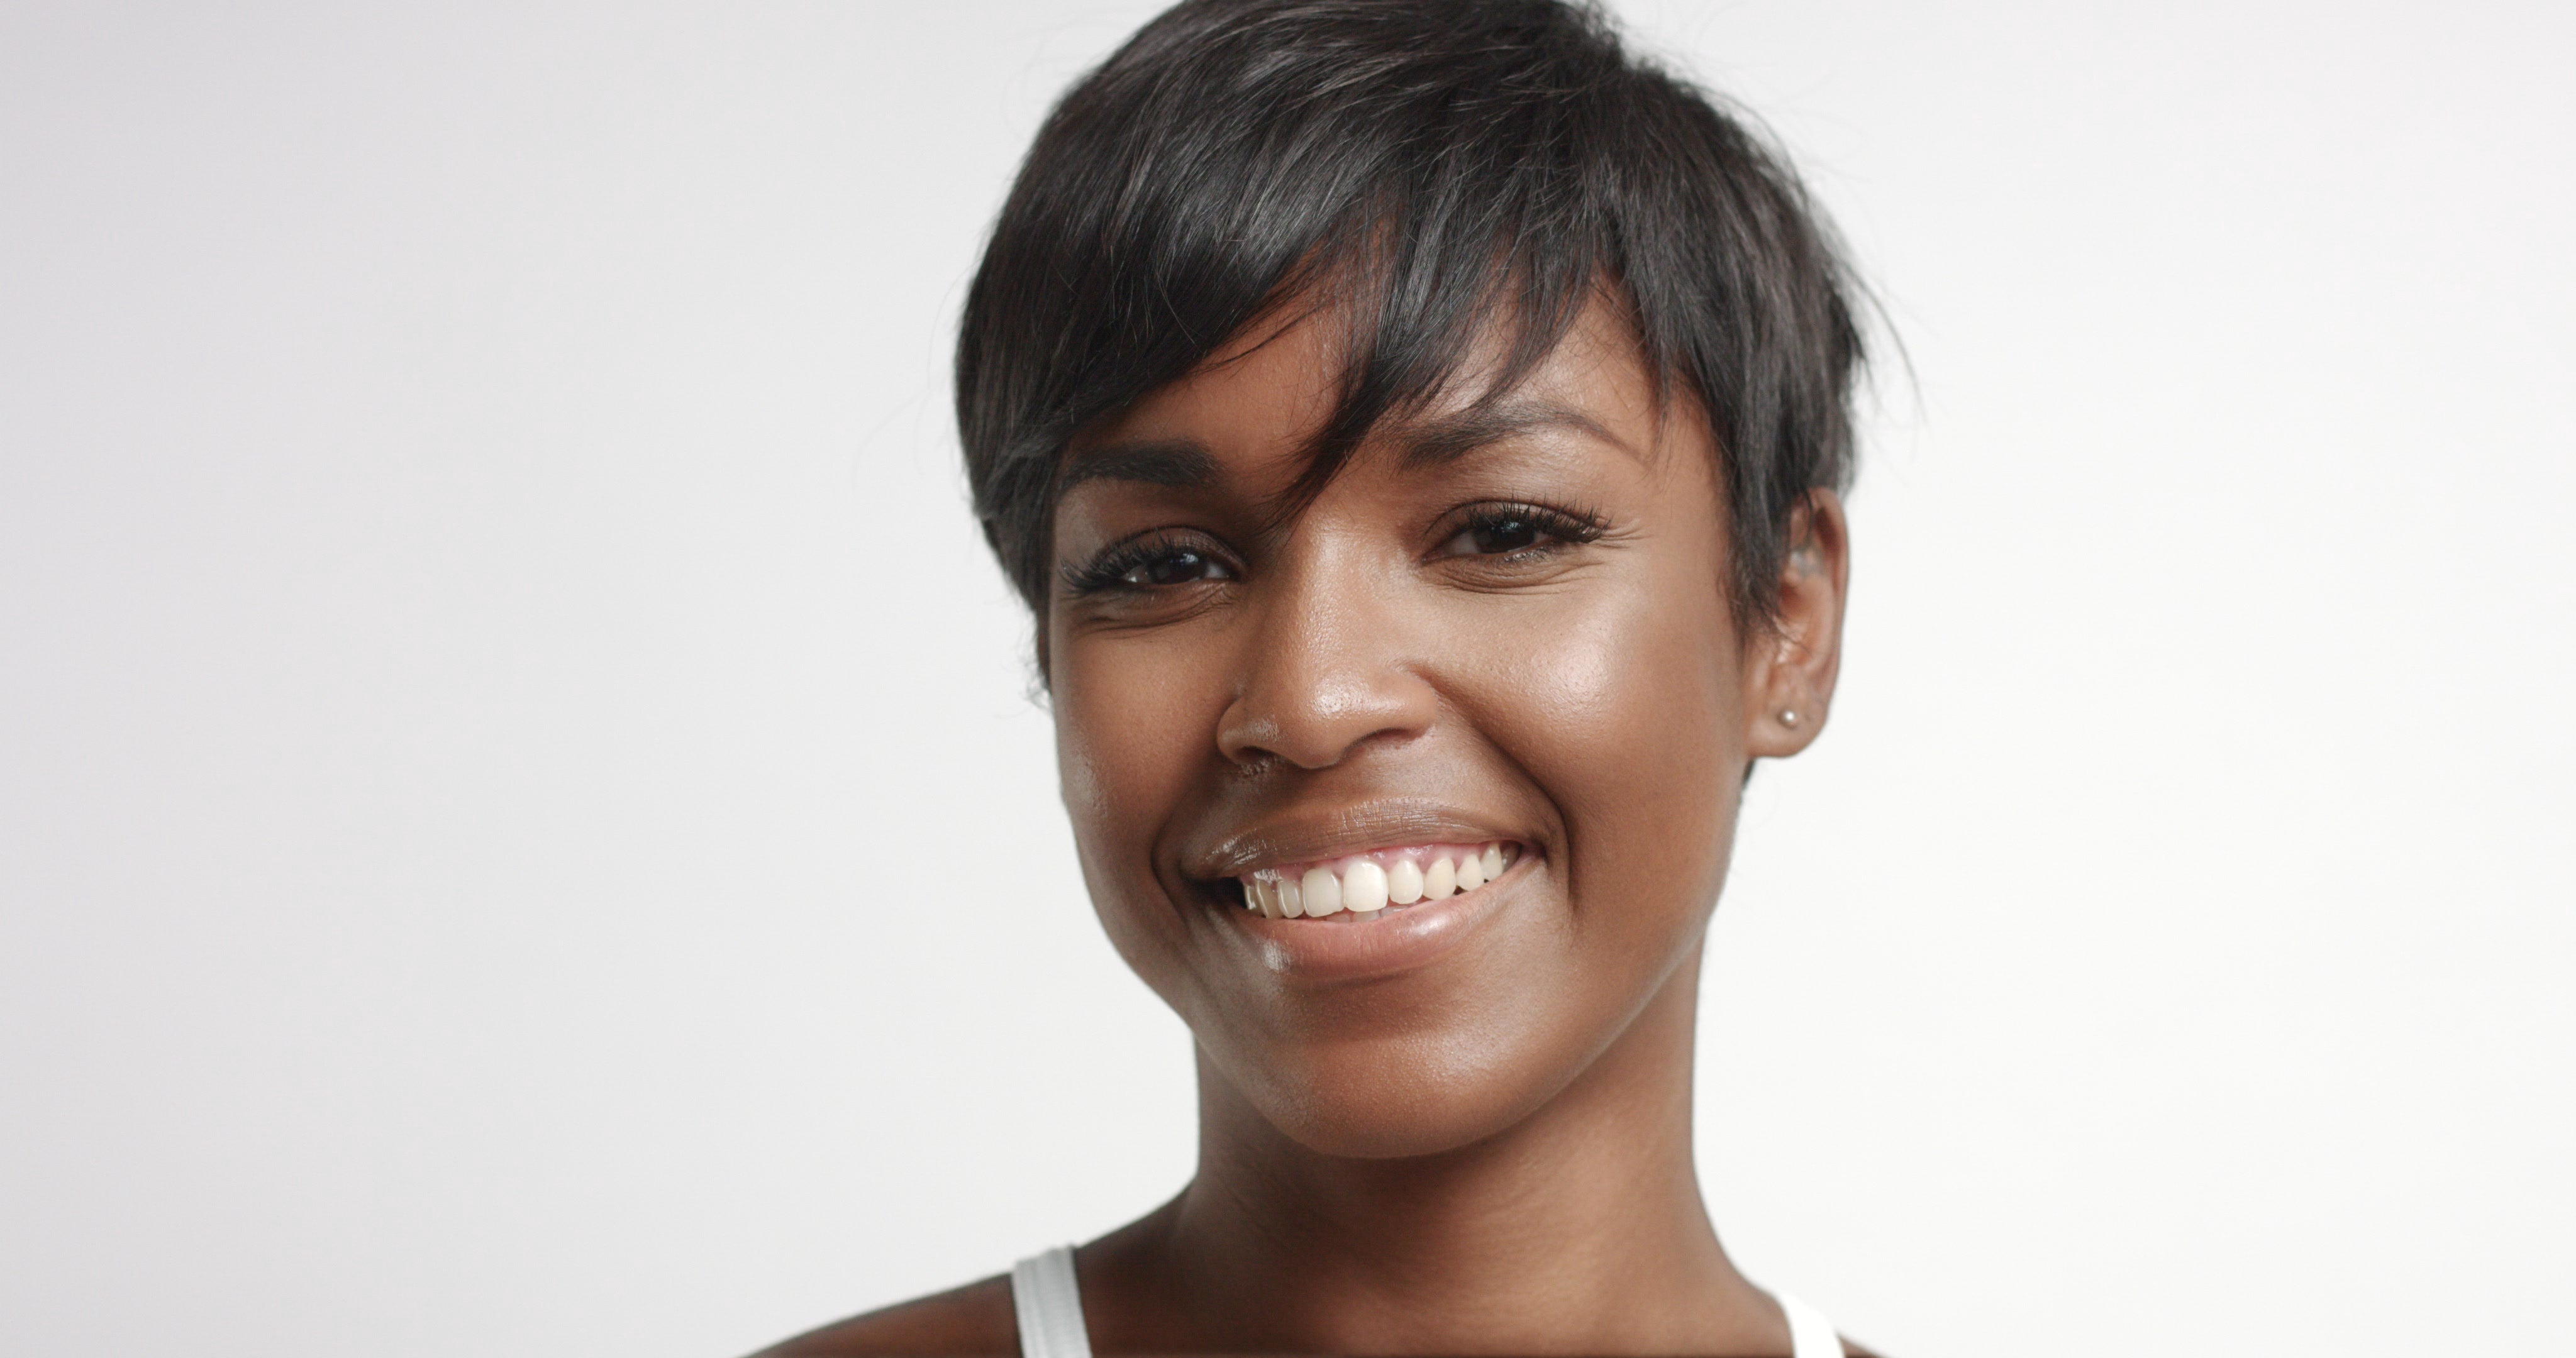 SKINCARE FOR BLACK WOMEN: Essential Tips for Good Skin